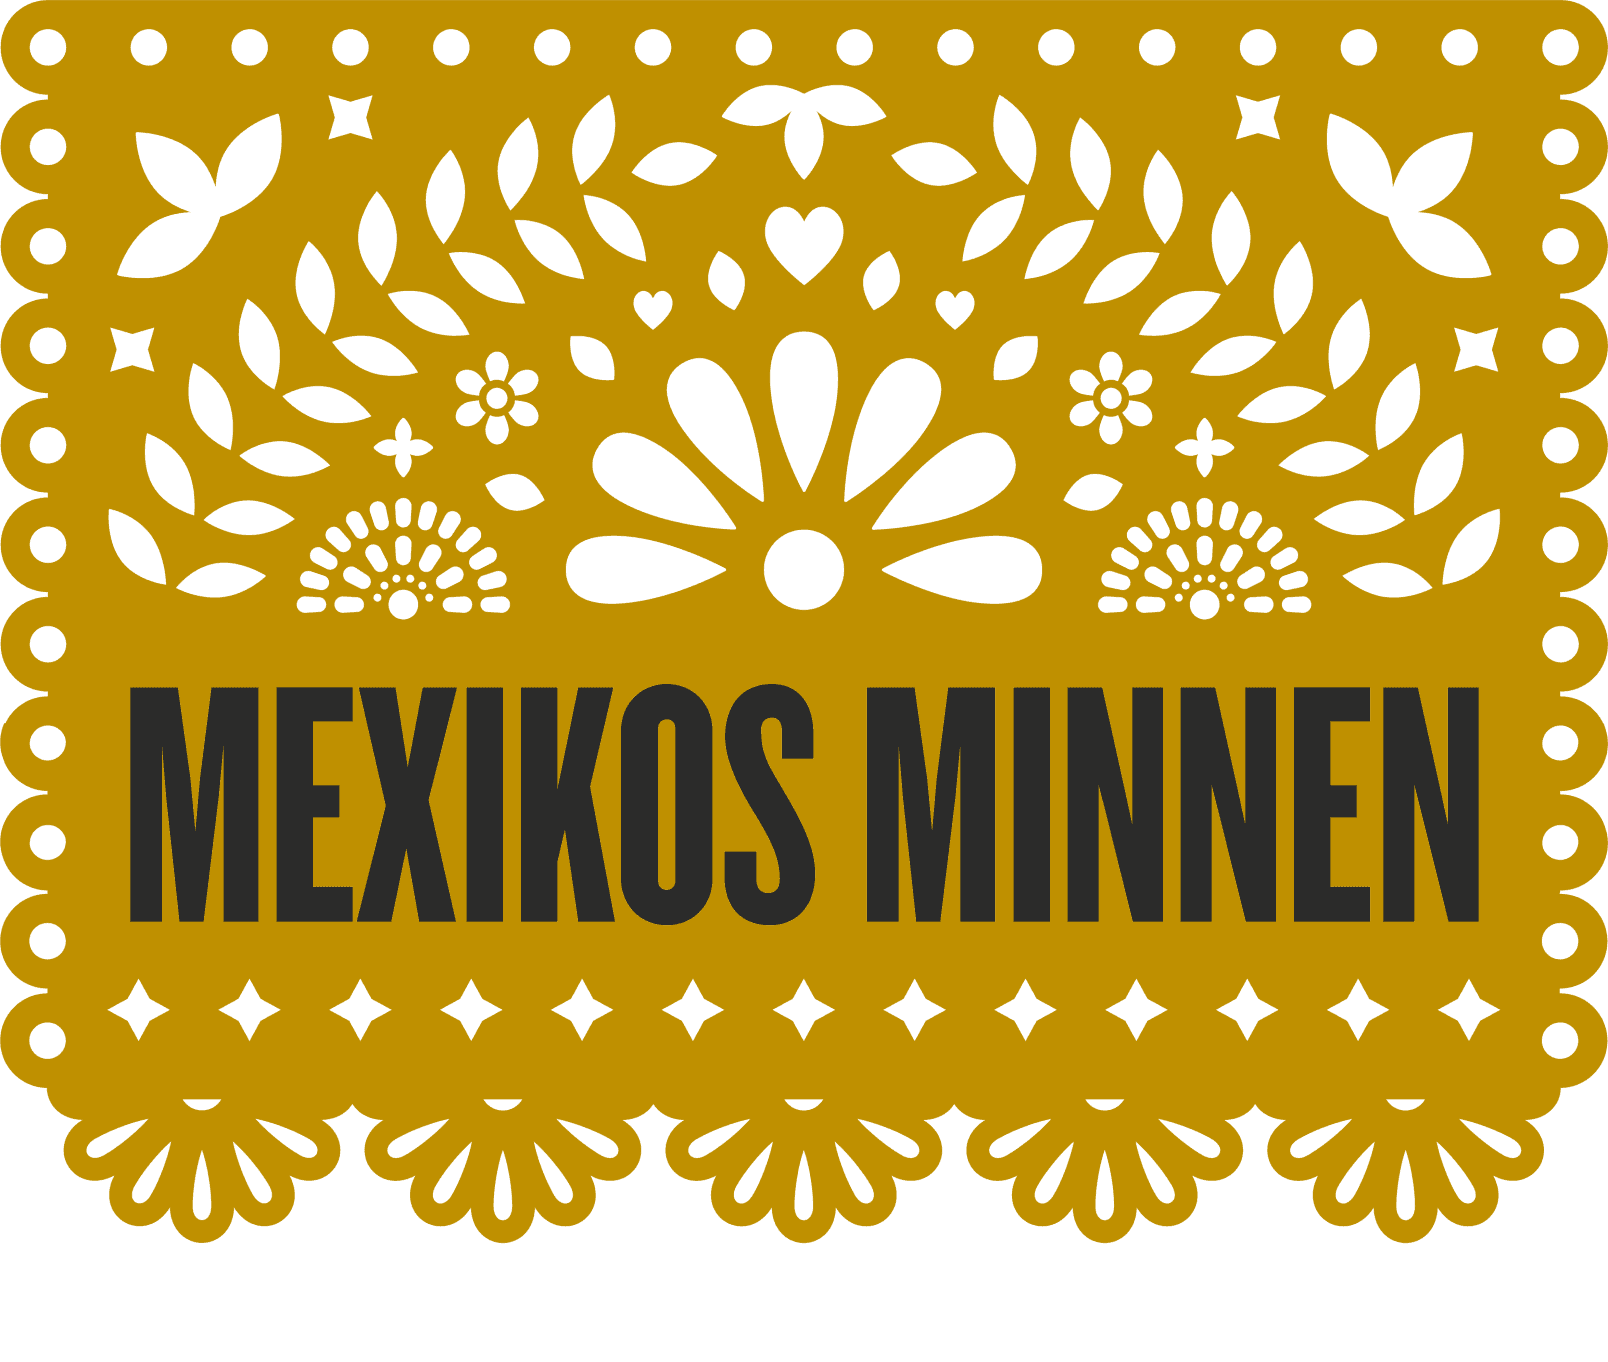 Senapsfärgat mönster och en text i svart som säger Mexikos minnen.